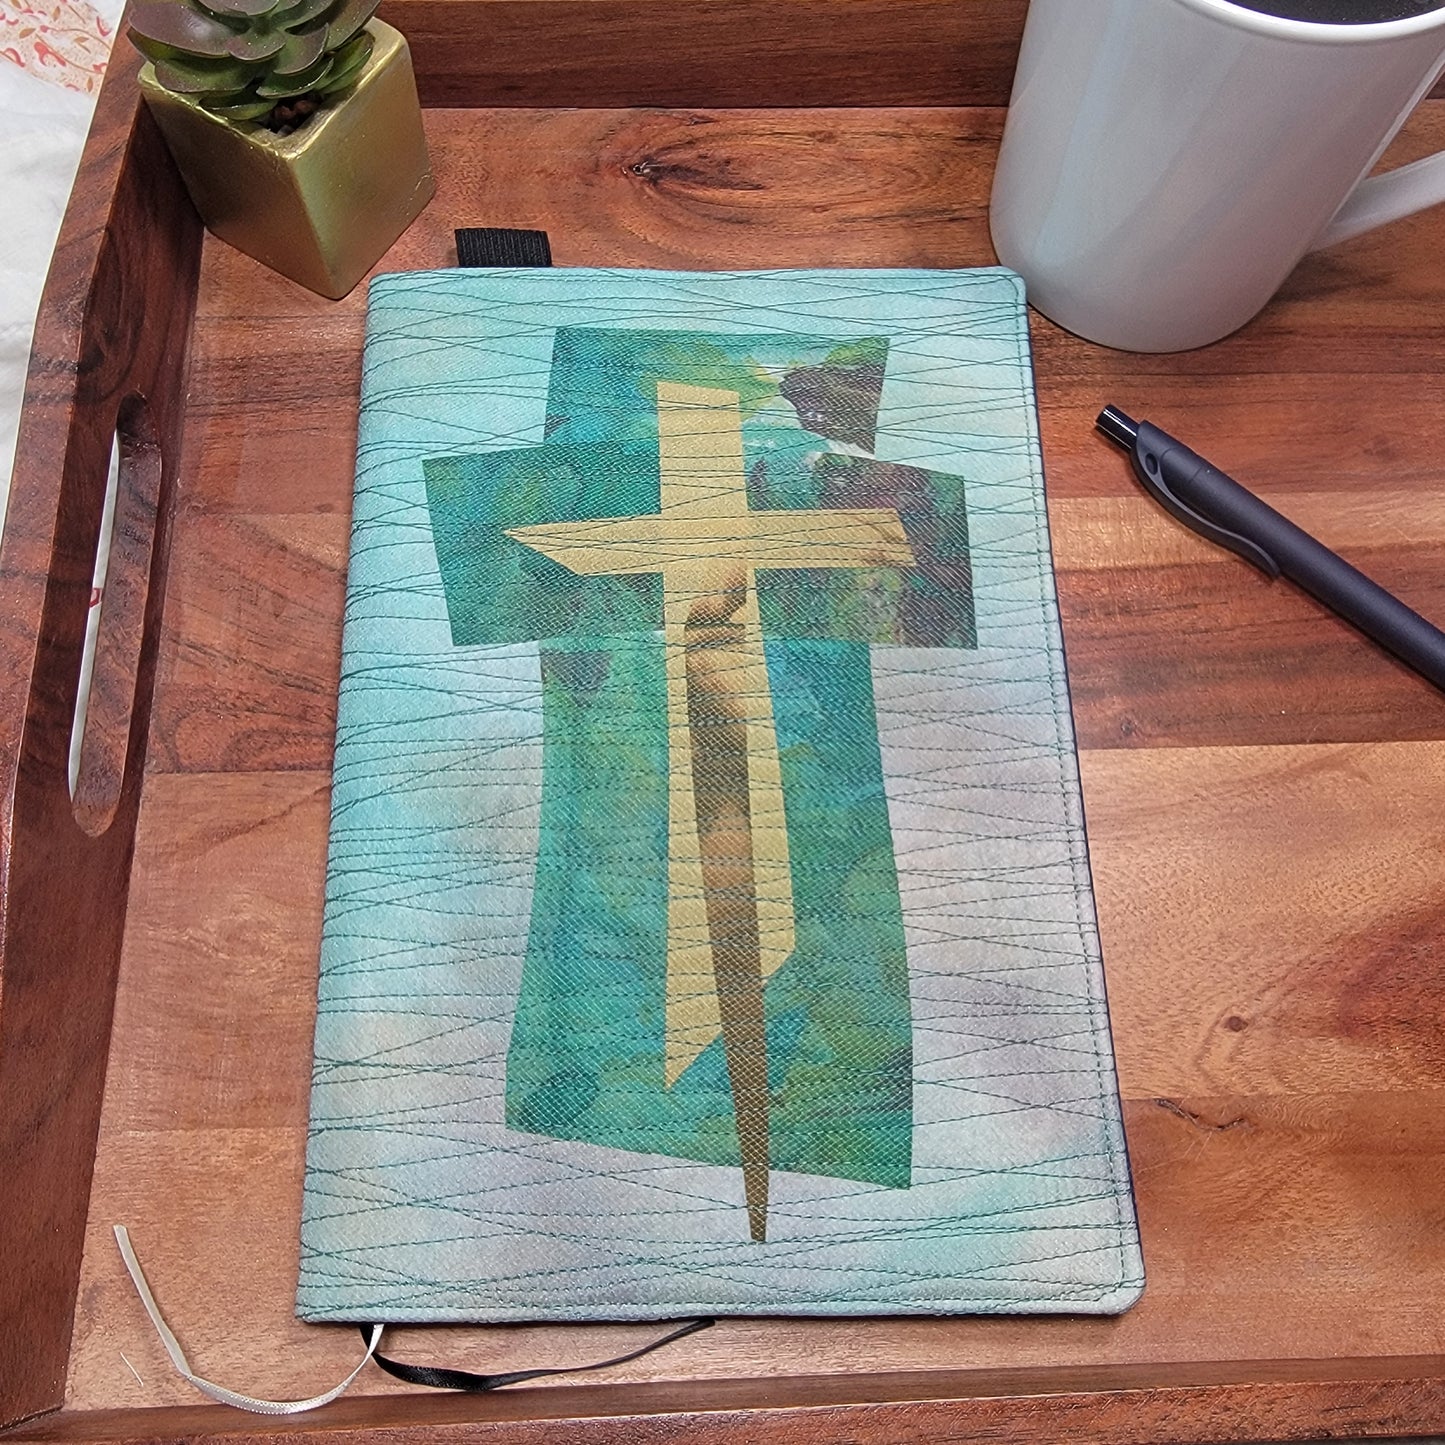 Christian Silk Cross Notebook Cover - 2